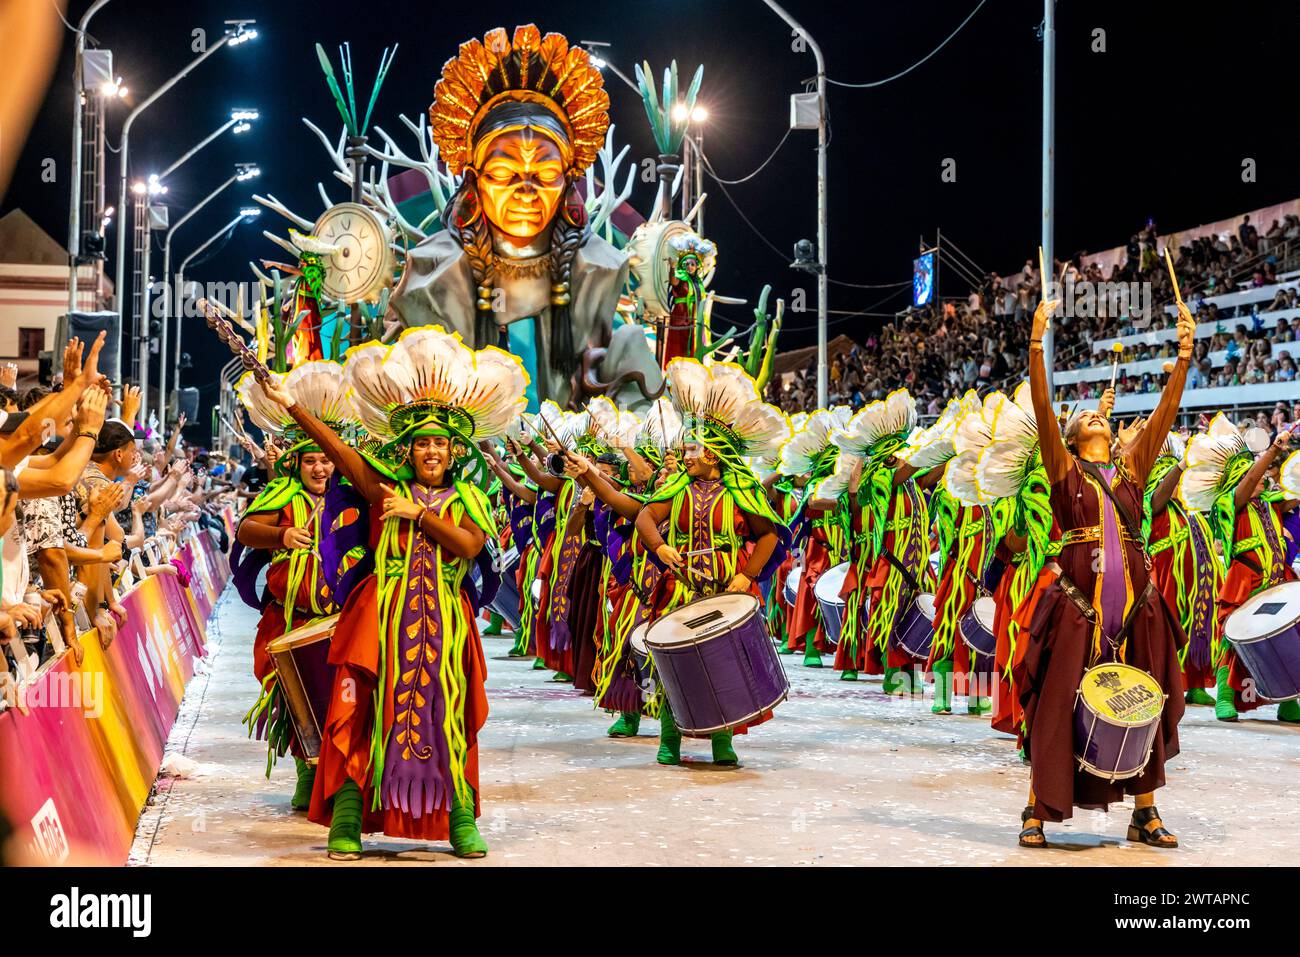 Un gruppo di tamburi e galleggiante di Carnevale nel Corsodromo presso l'annuale Carnaval del Pais, Gualeguaychu, provincia di Entre Rios, Argentina. Foto Stock